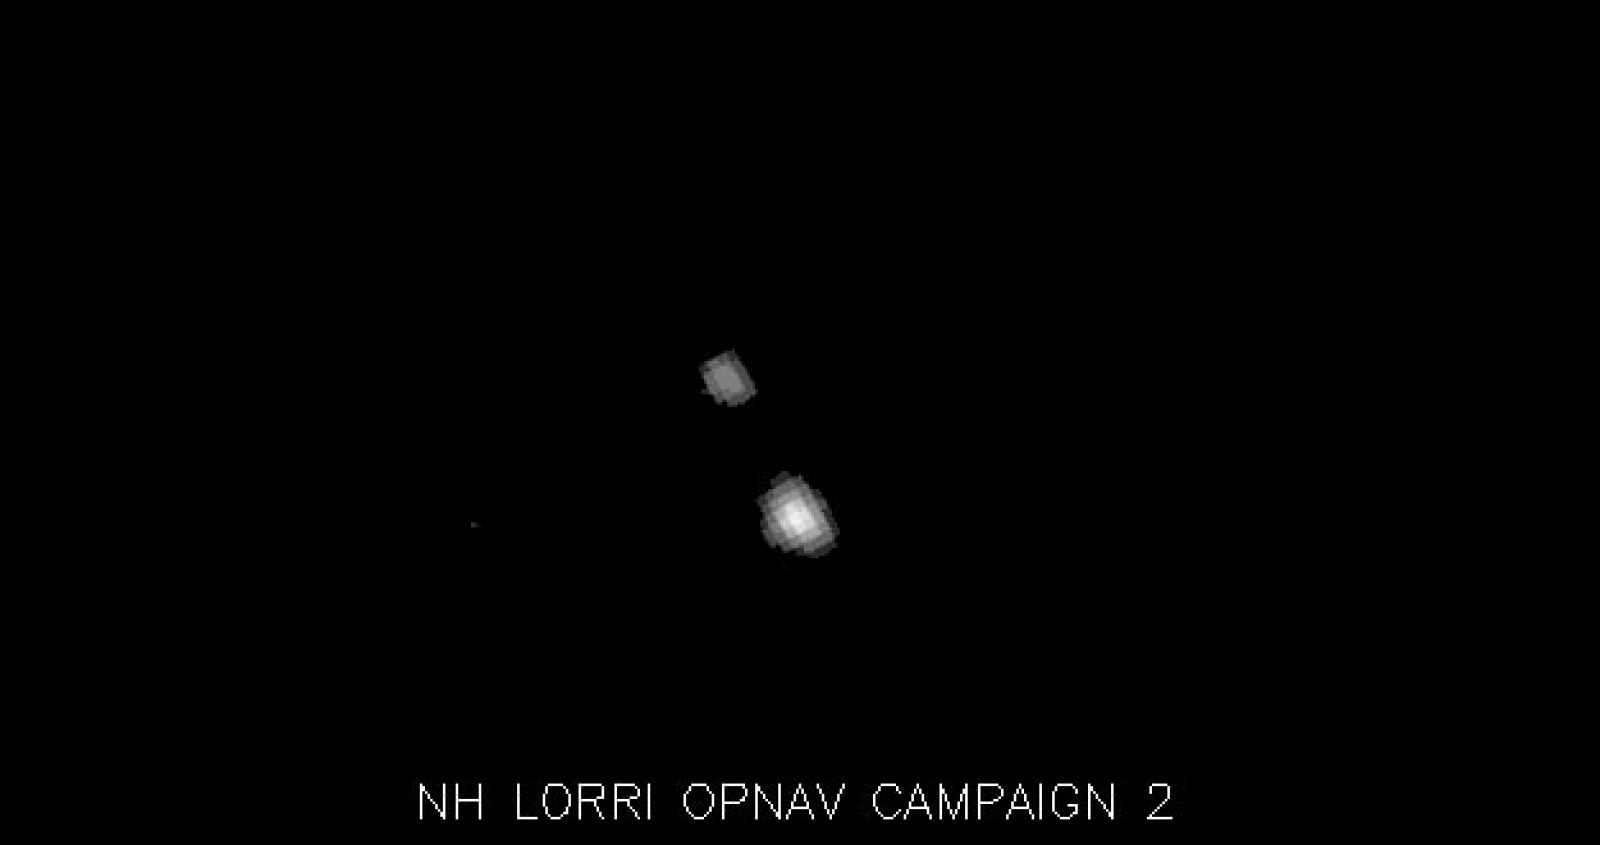 Imagen de Plutón y de su luna Caronte tomada por la nave New Horizons.